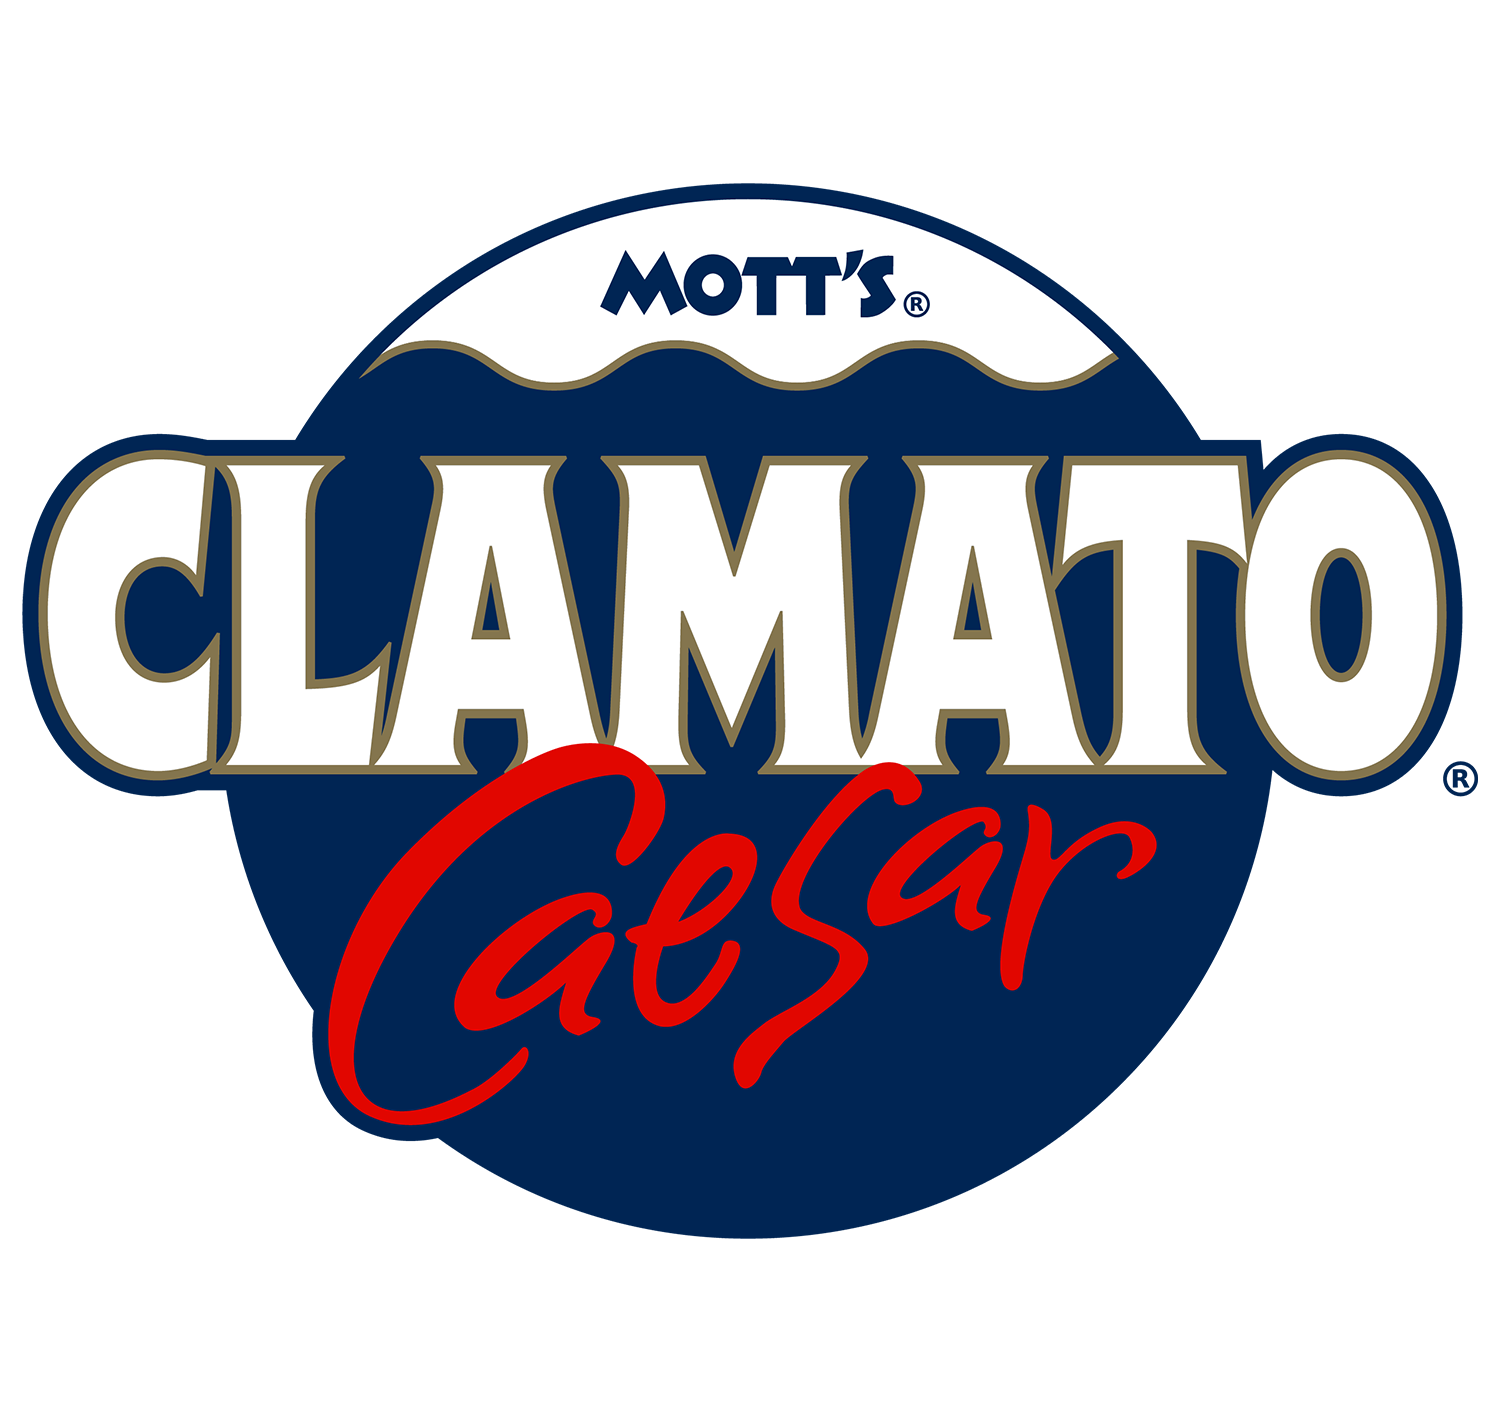 Mott's Clamato Caesar